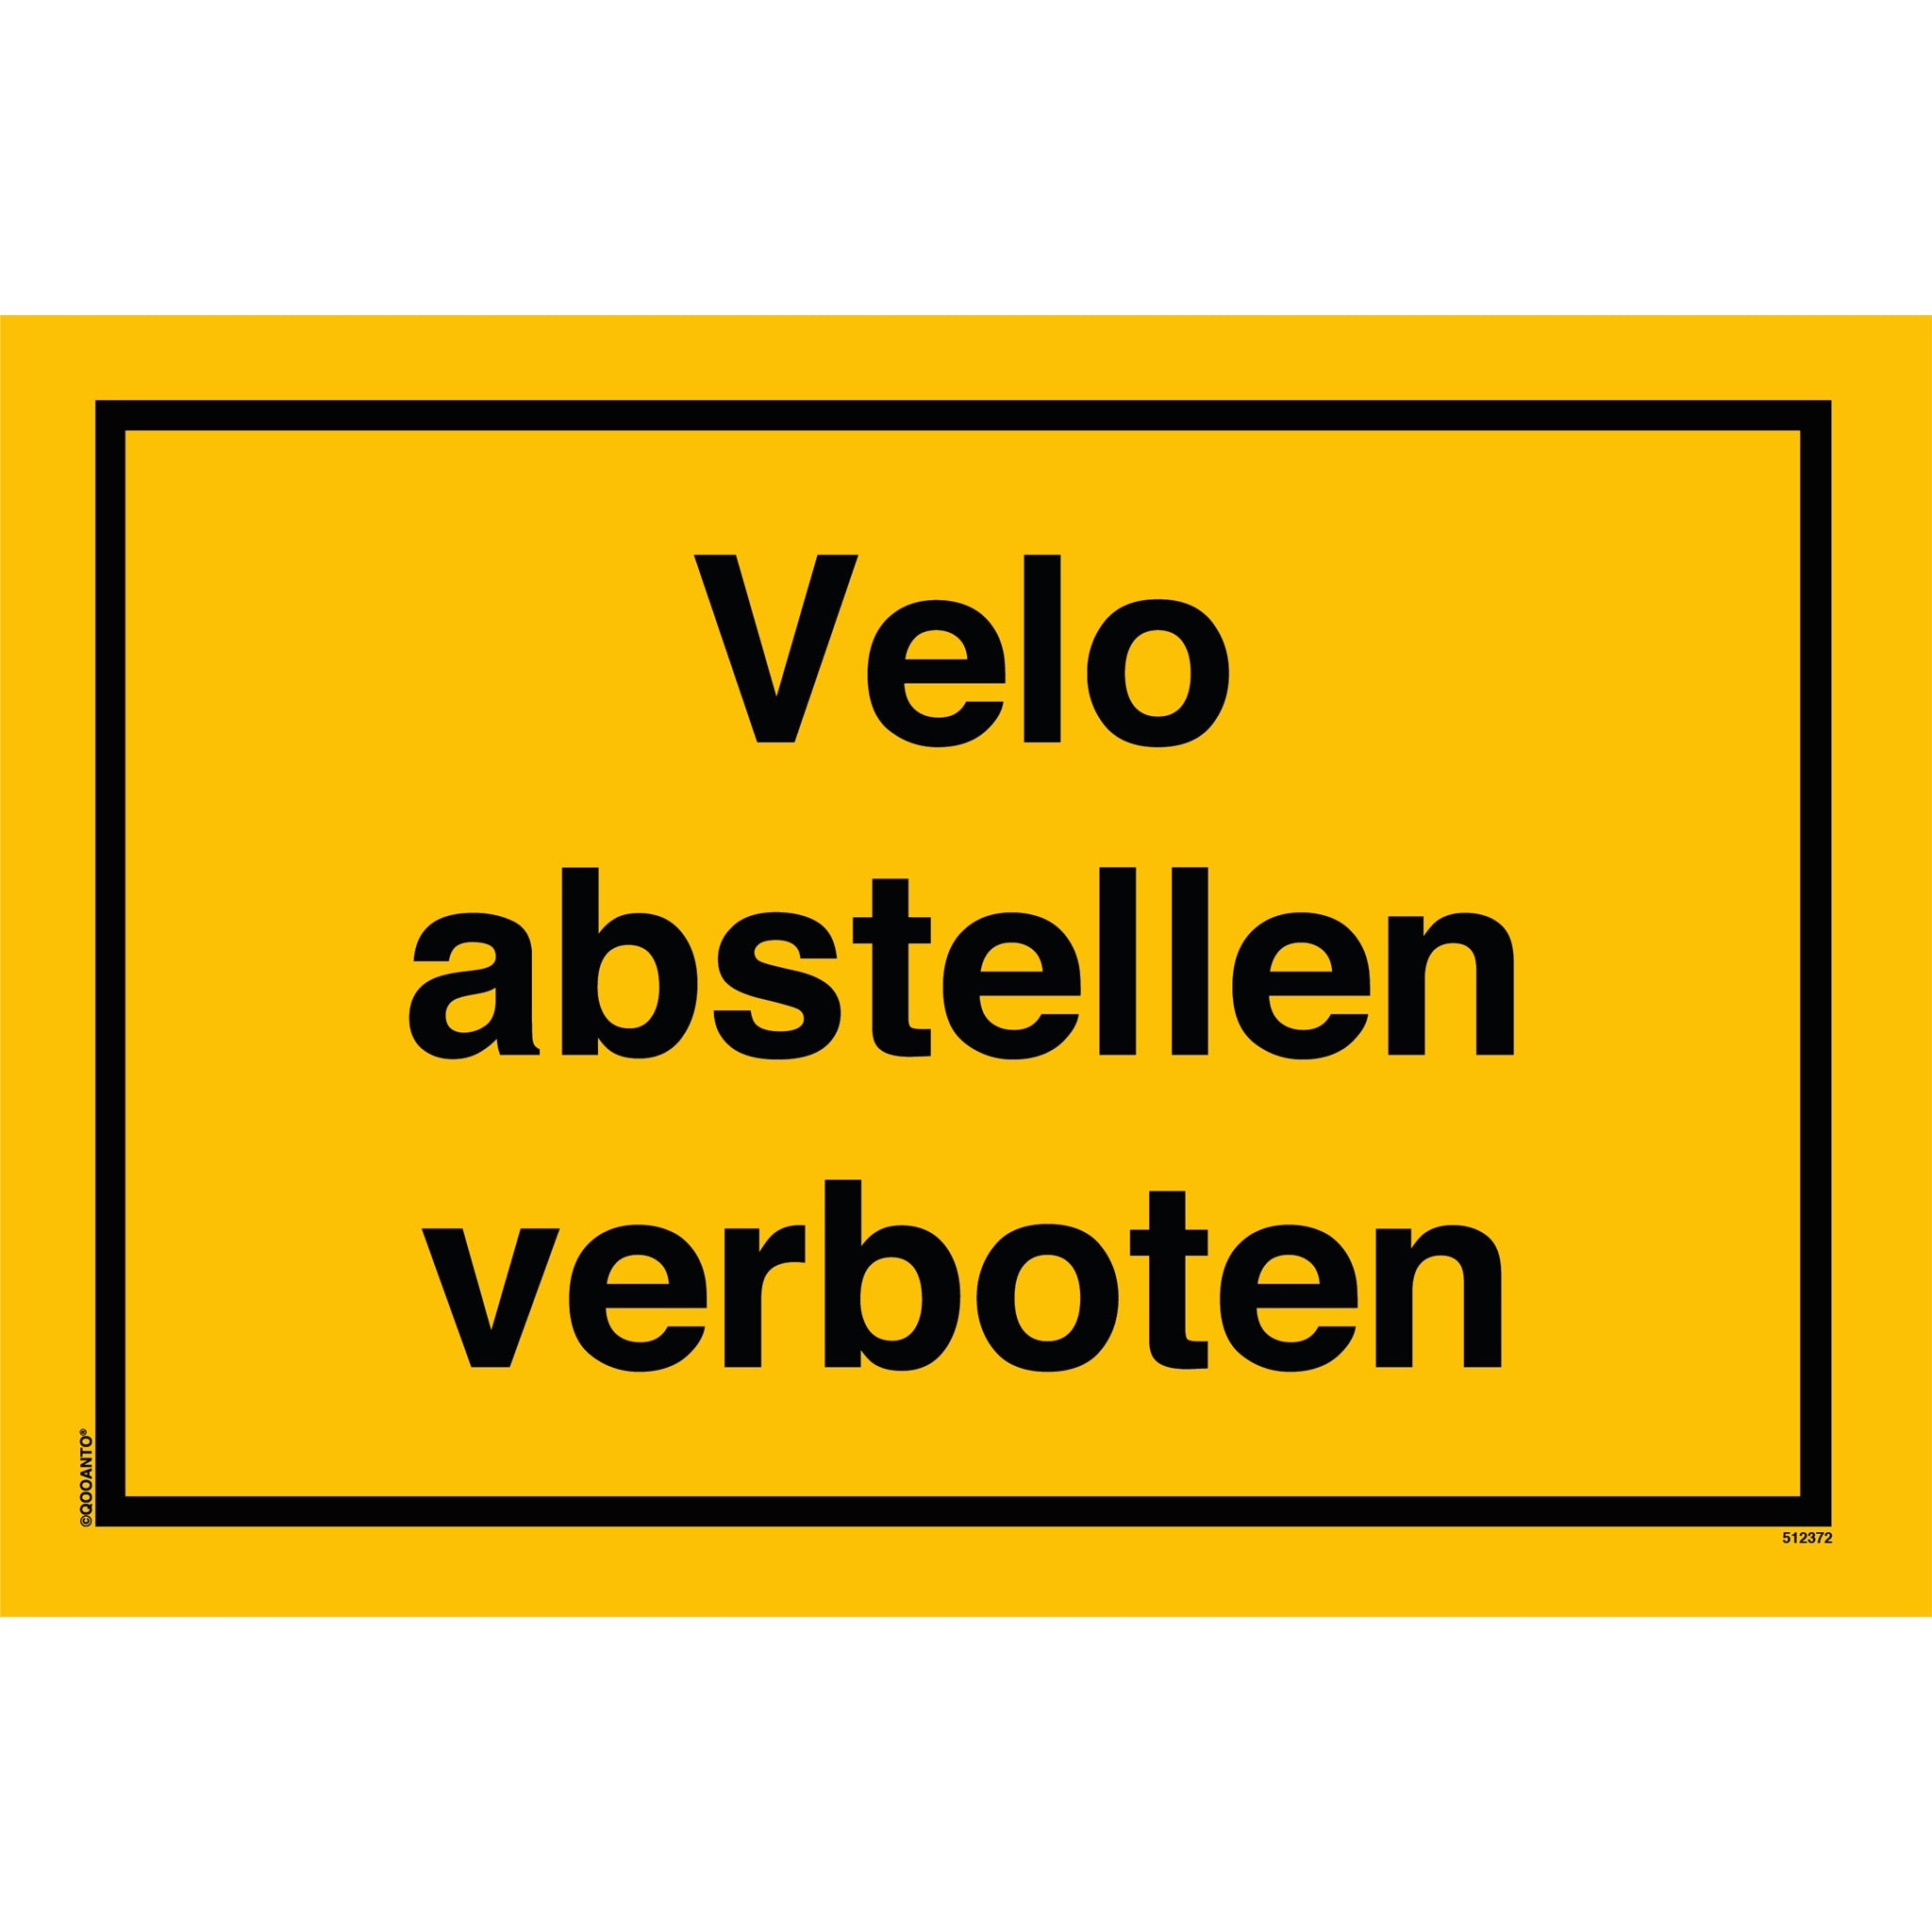 Velo abstellen verboten, gelb, Schild oder Aufkleber